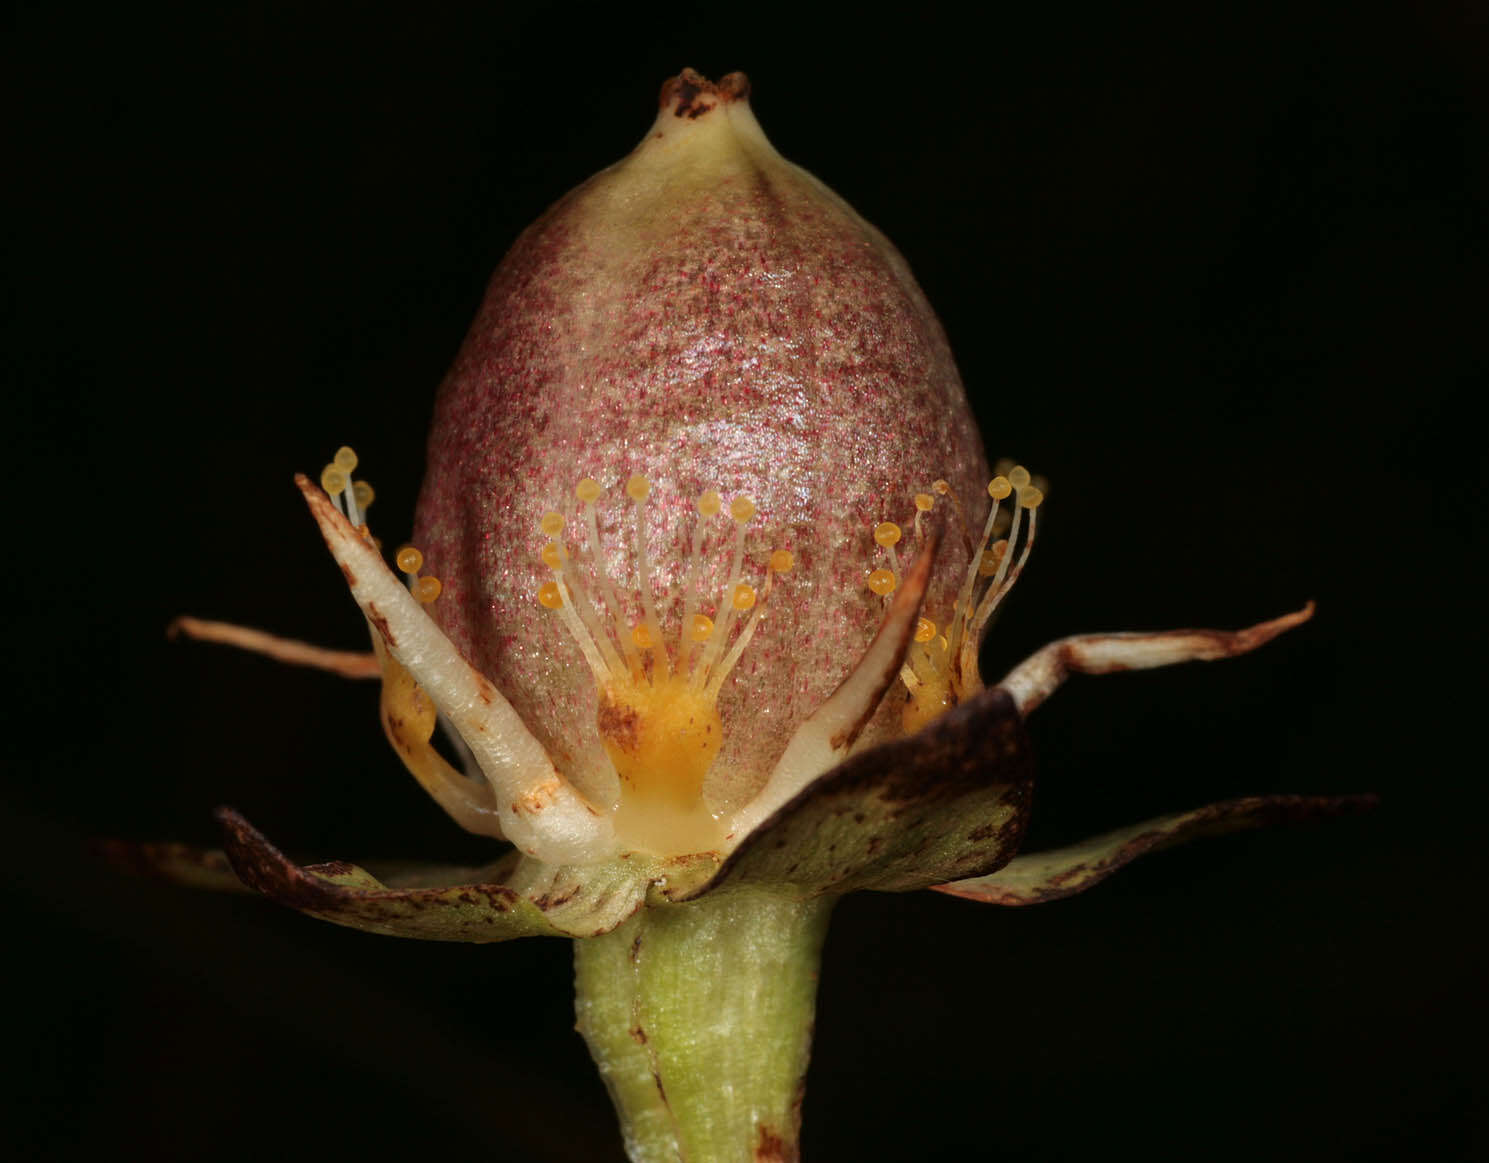 Image of Parnassiaceae